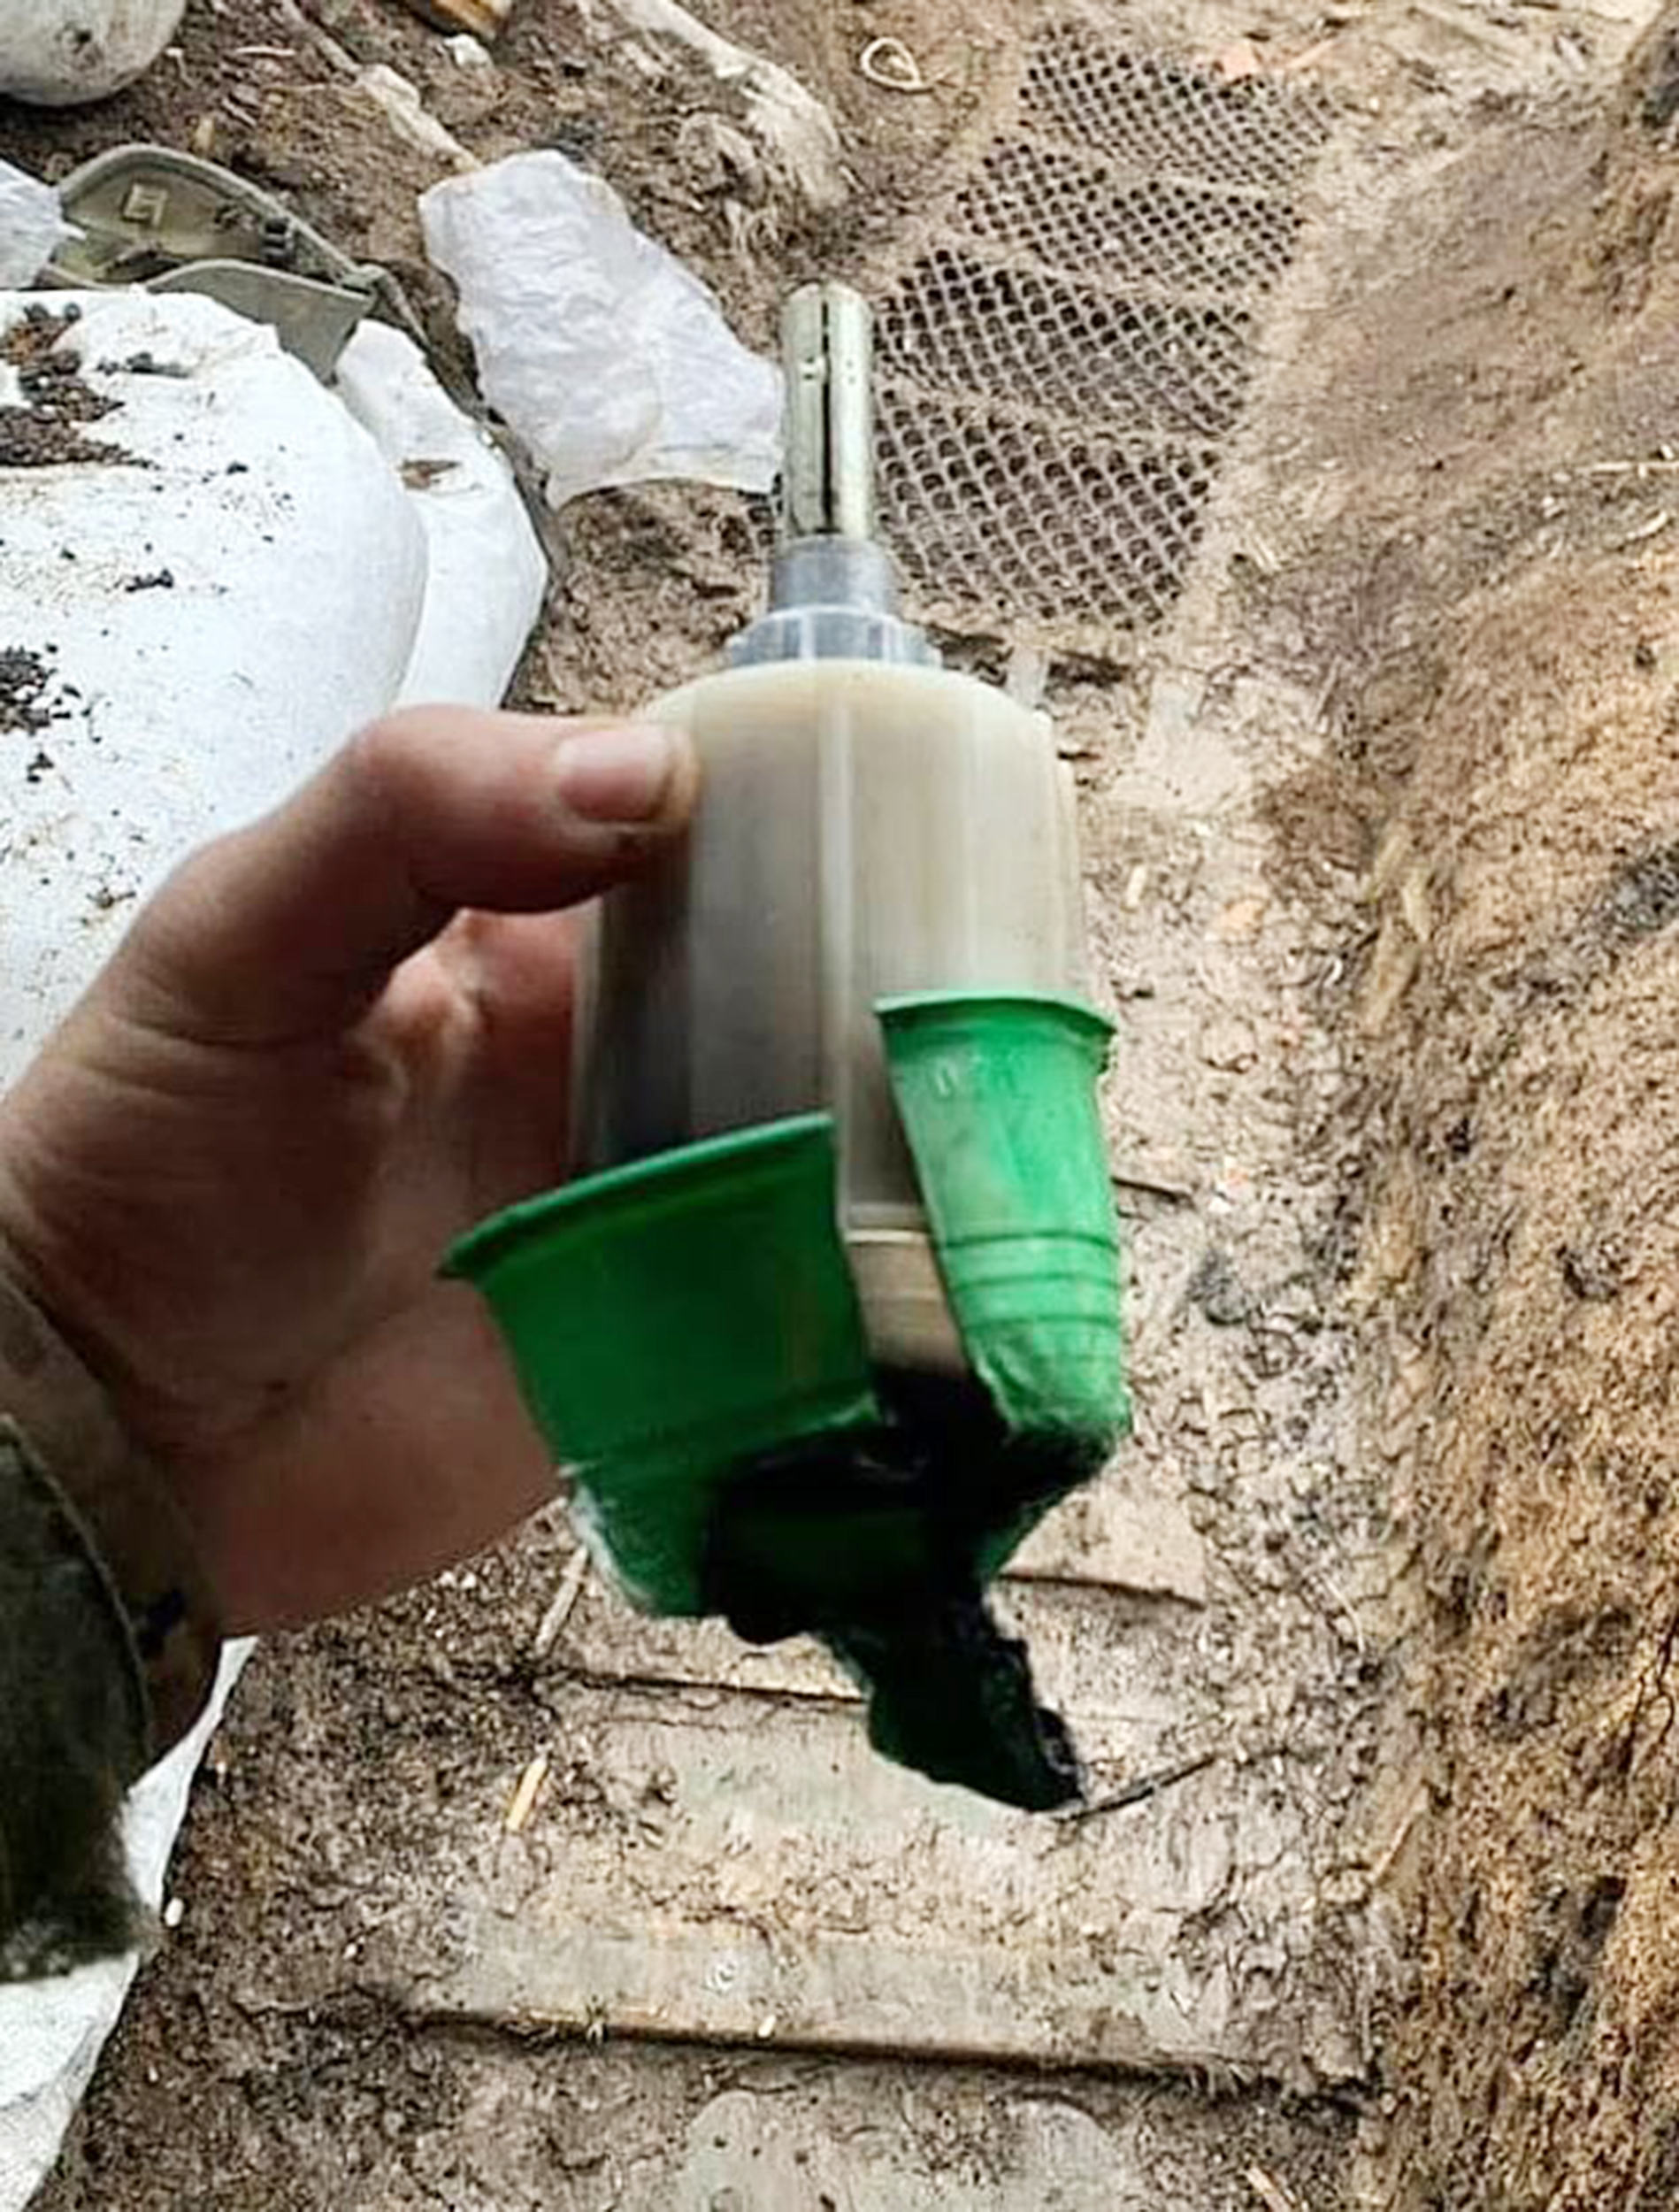 Die K-51-Gasgranate, die normalerweise mit Tränengas gefüllt ist, wurde in einem ukrainischen Schützengraben gefunden